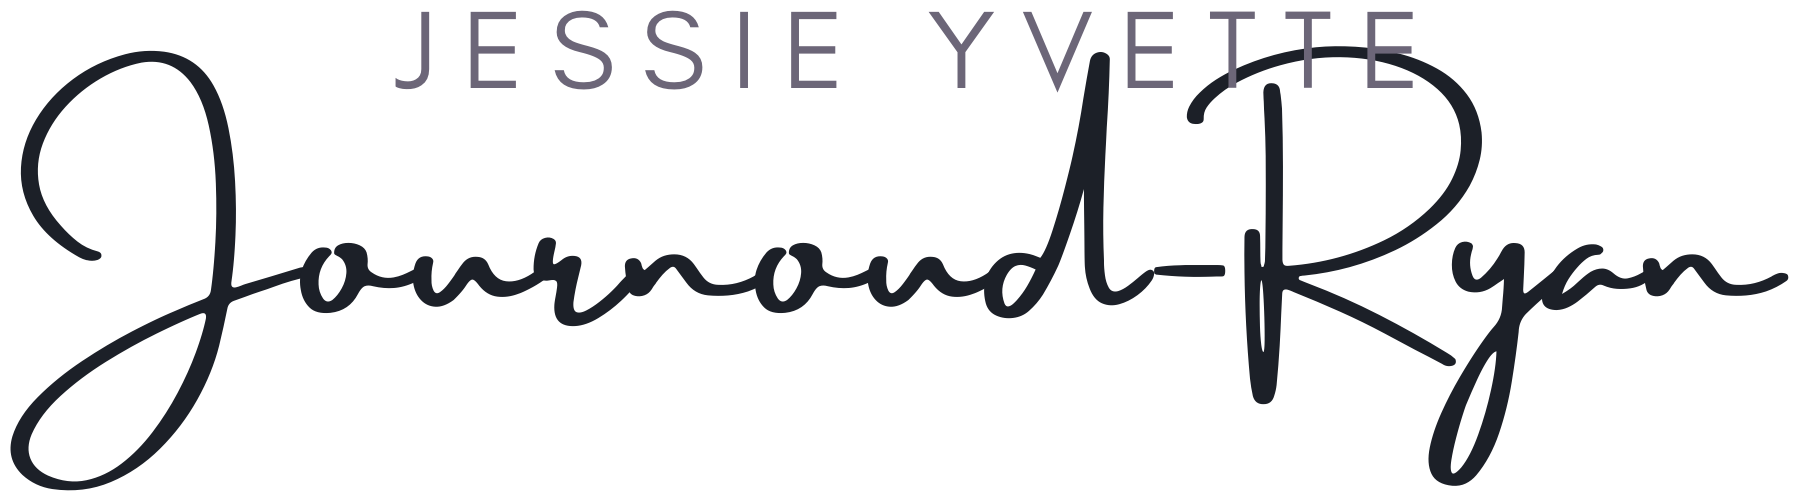 Jessie-Yvette-Journoud-Ryan-logo